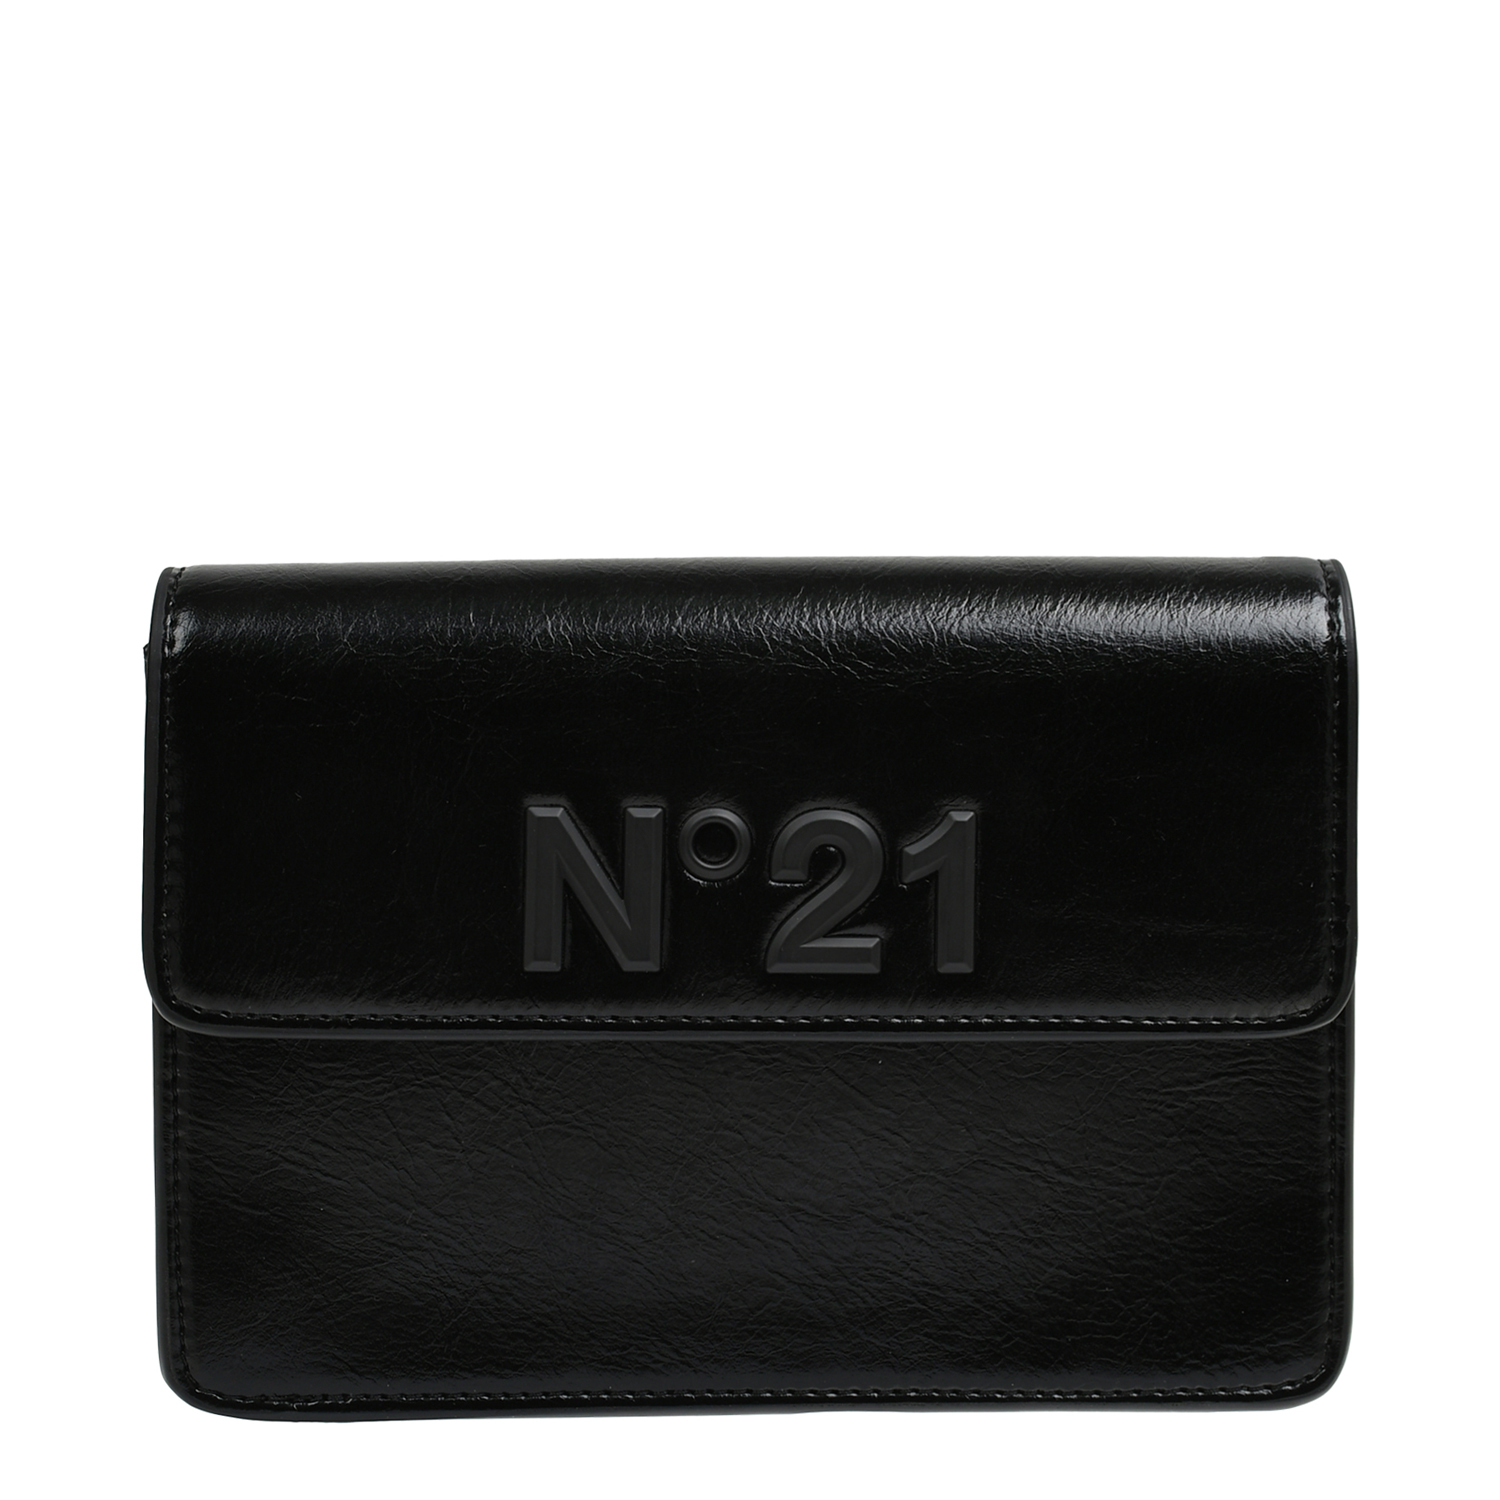 Прямоугольная сумка с лого в тон, черная No. 21, размер unica, цвет черный - фото 1